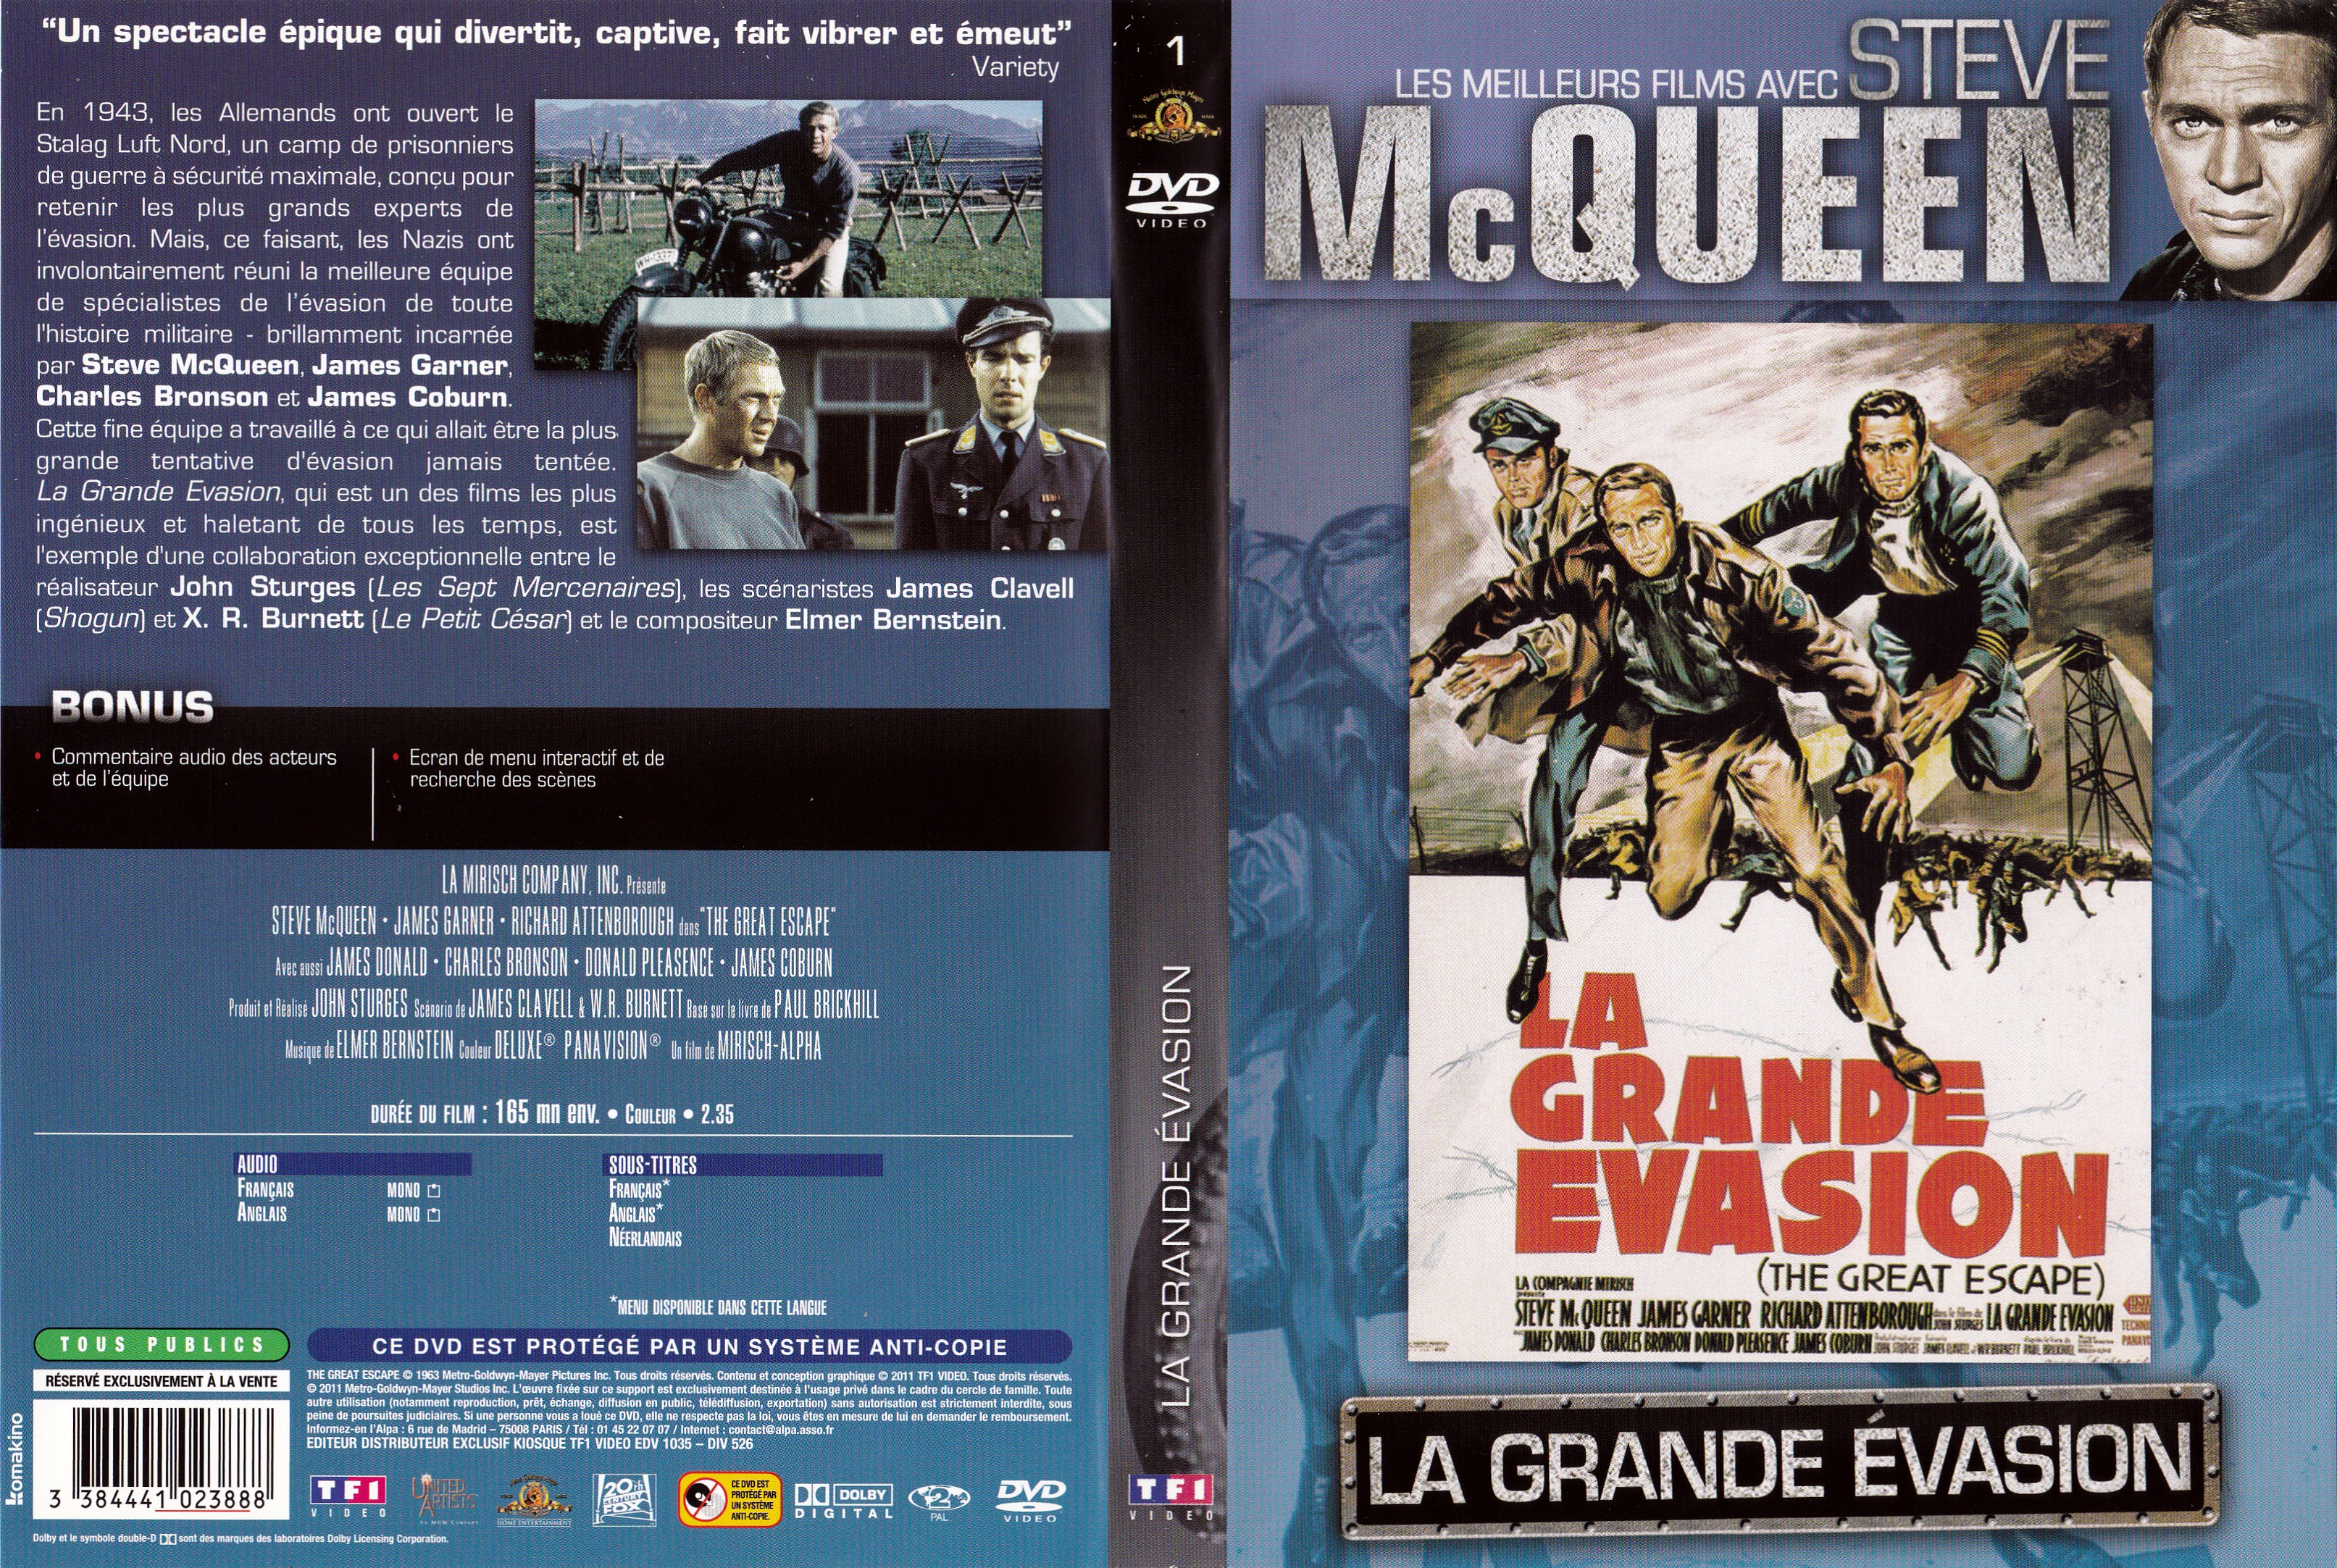 Jaquette DVD La grande vasion v7